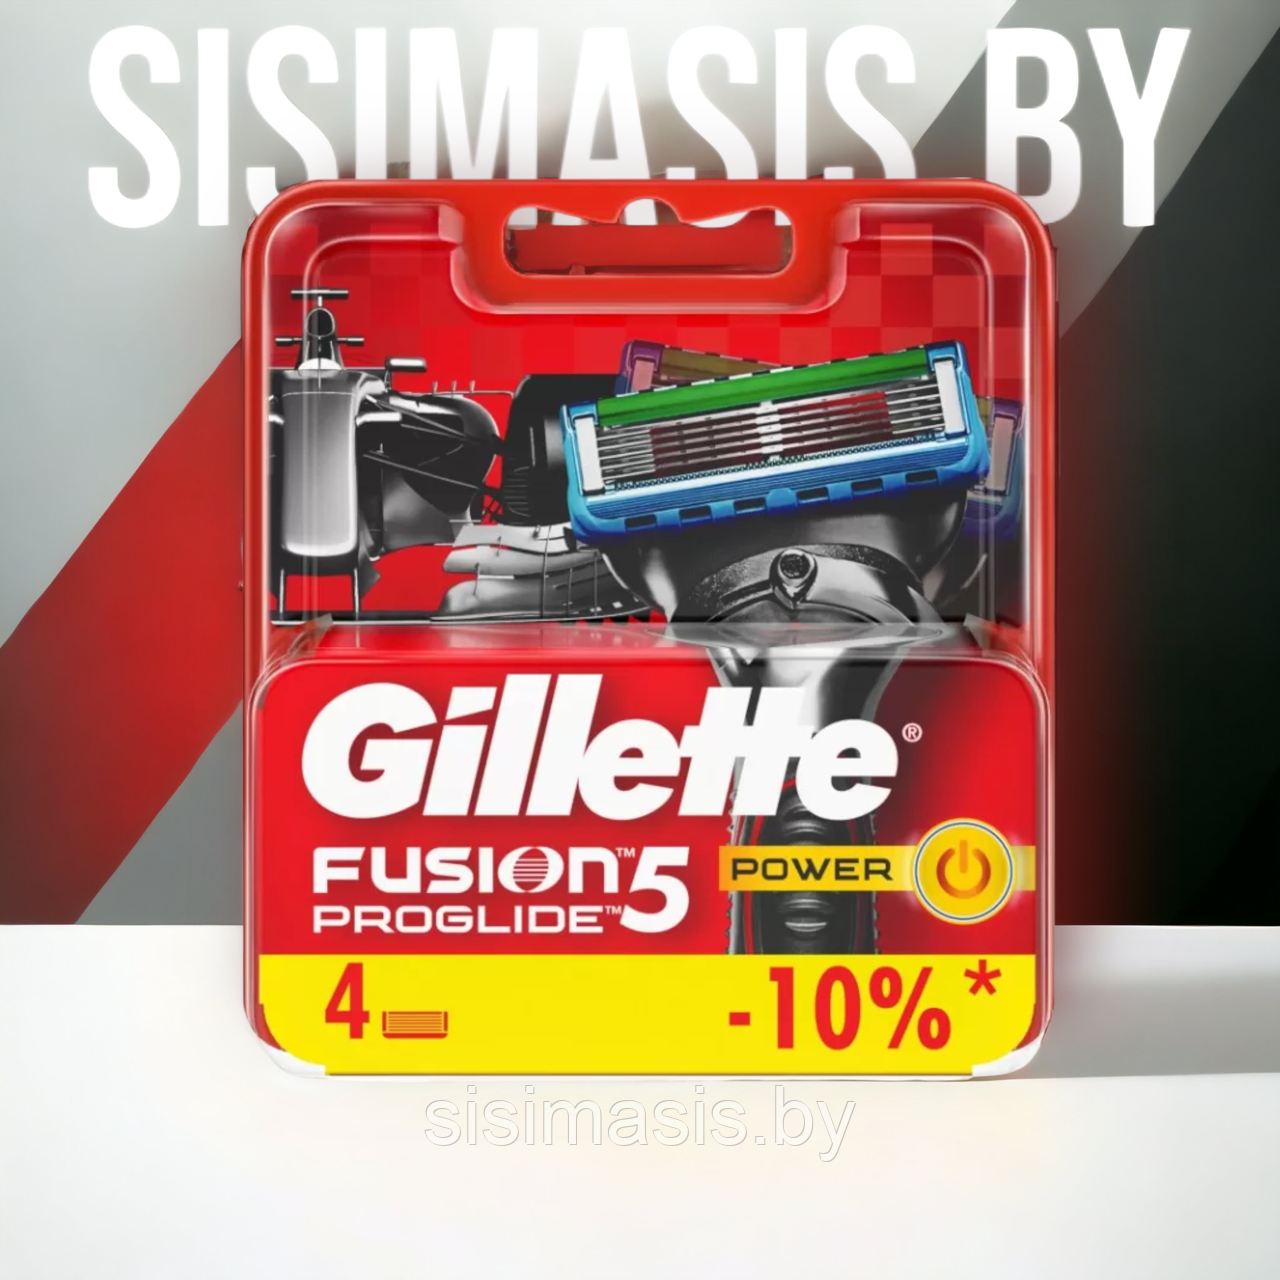 Сменные кассеты для бритья Gillette Fusion5 Proglide Power, оригинал, 4 шт.